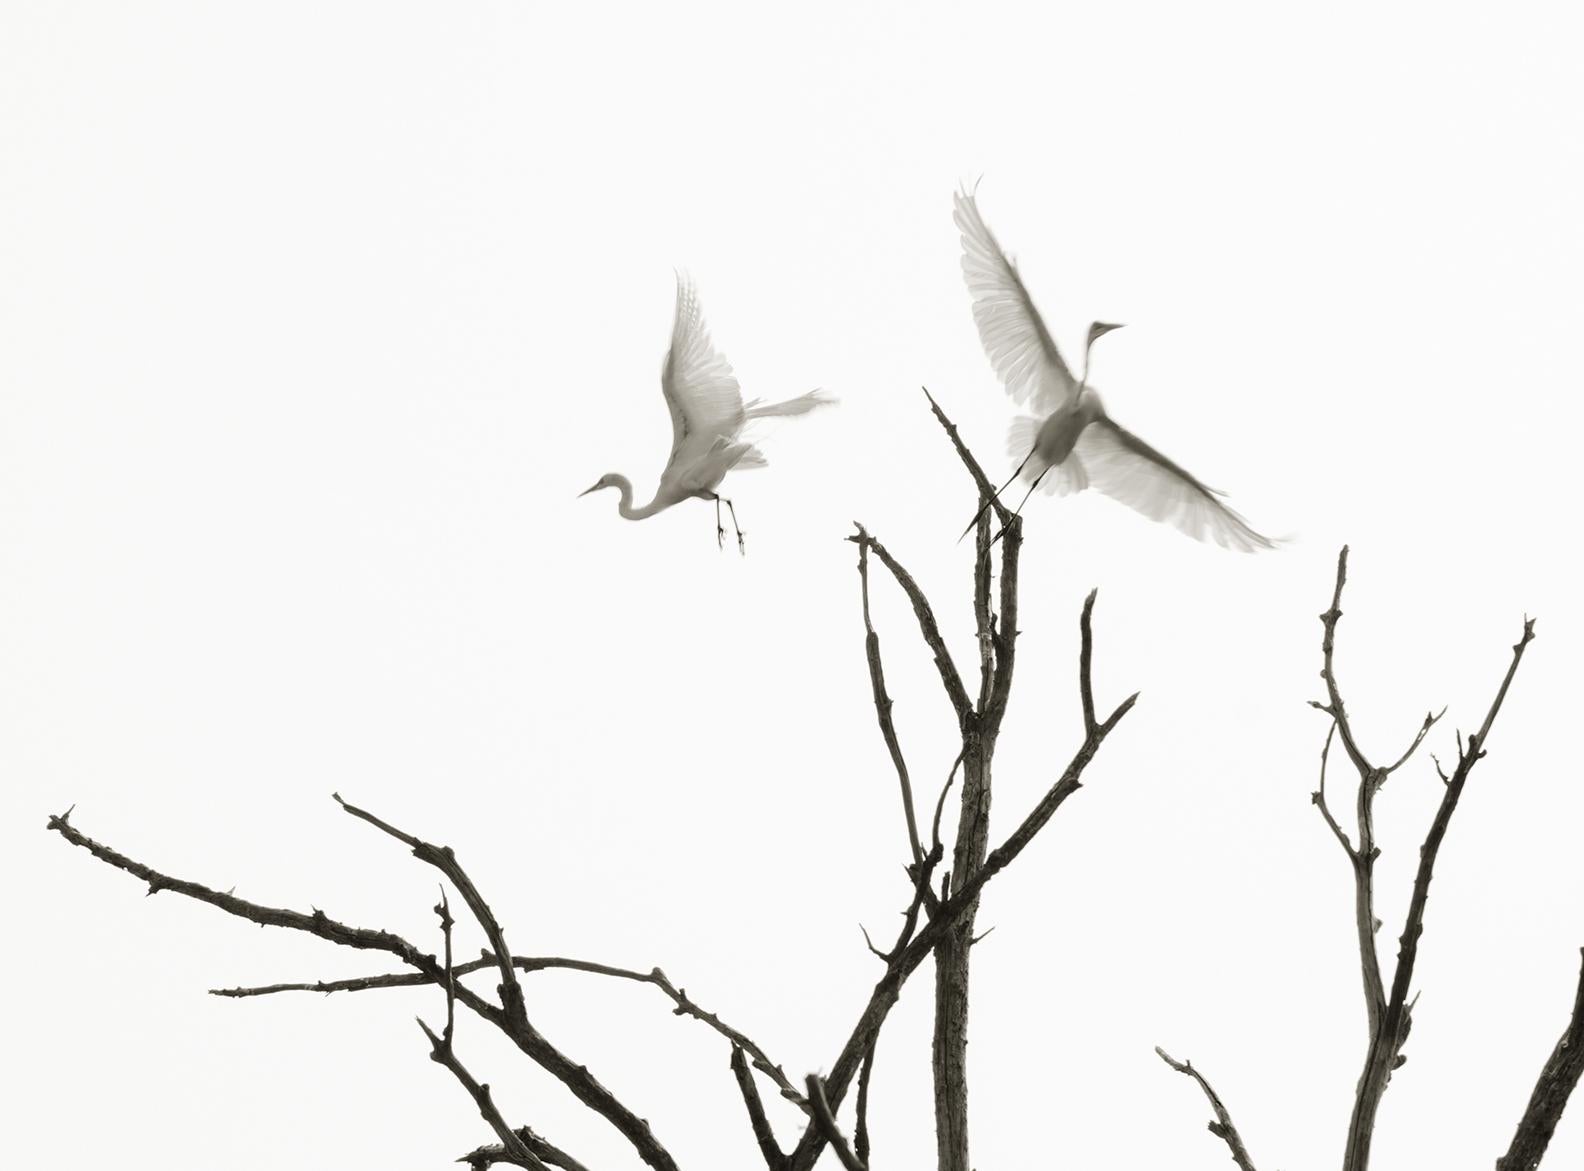 Egrets in Flight: Schwarz-Weiß-Fotografie, Silhouette von Vögeln und Bäumen am Himmel